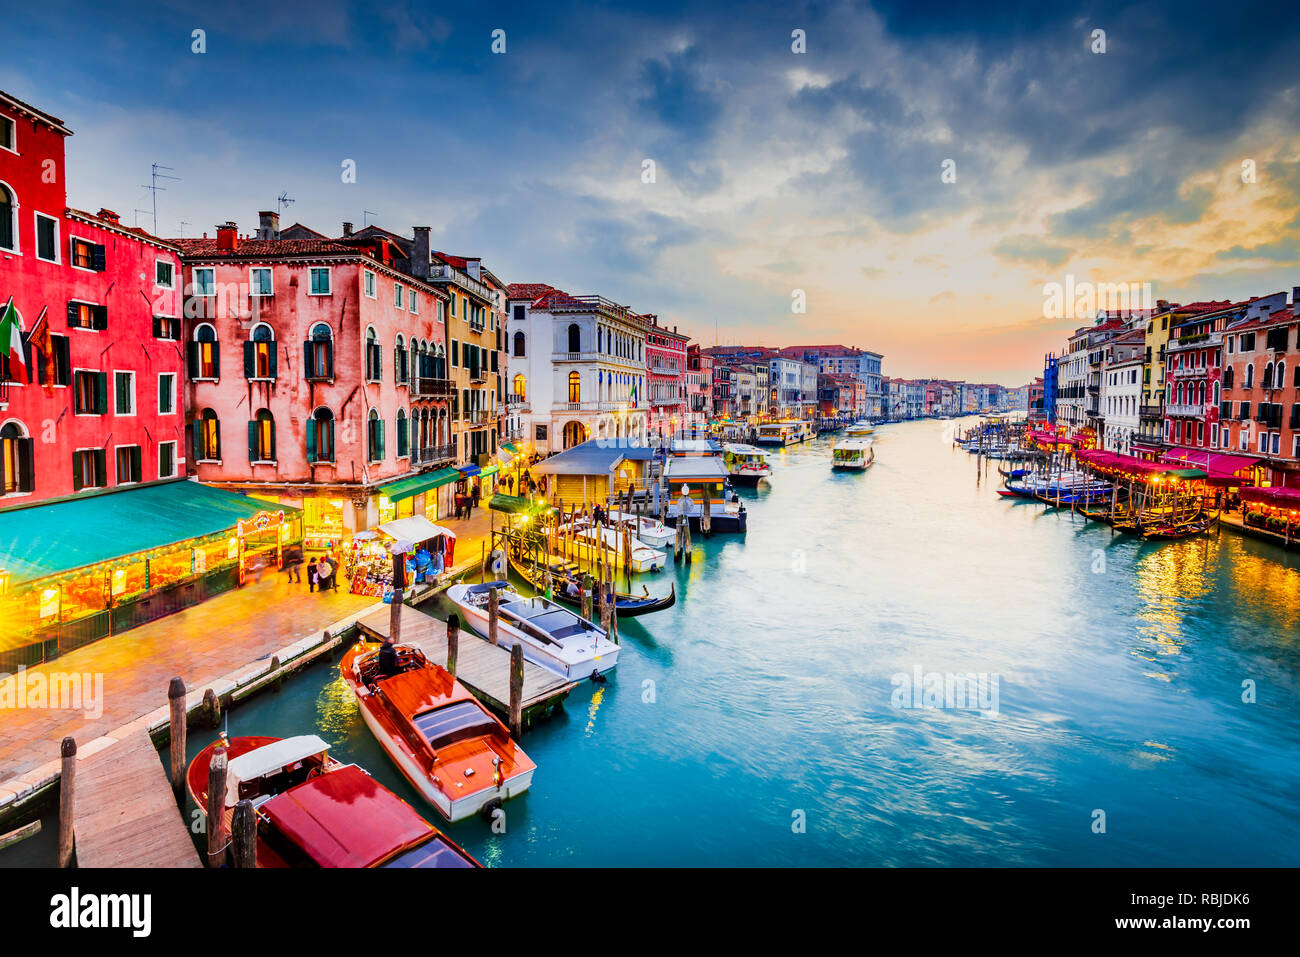 Venite, Italie - l'image de nuit avec Grand Canal, le plus vieux pont de Rialto, Venise. Banque D'Images